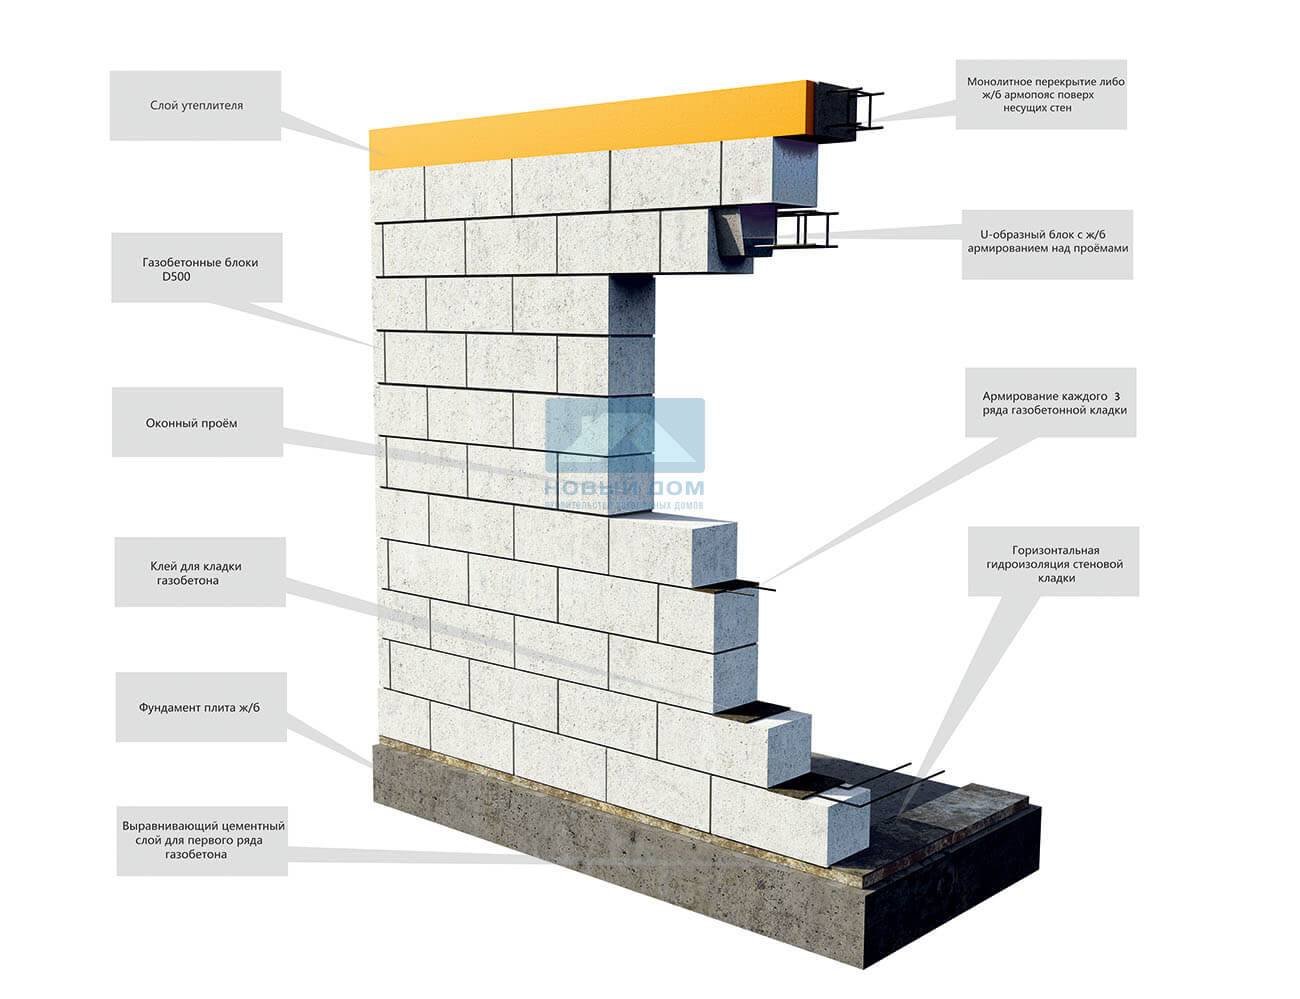 Как высчитать стоимость постройки дома из пеноблоков своими руками. расчет материалов. возведение фундамента и стен